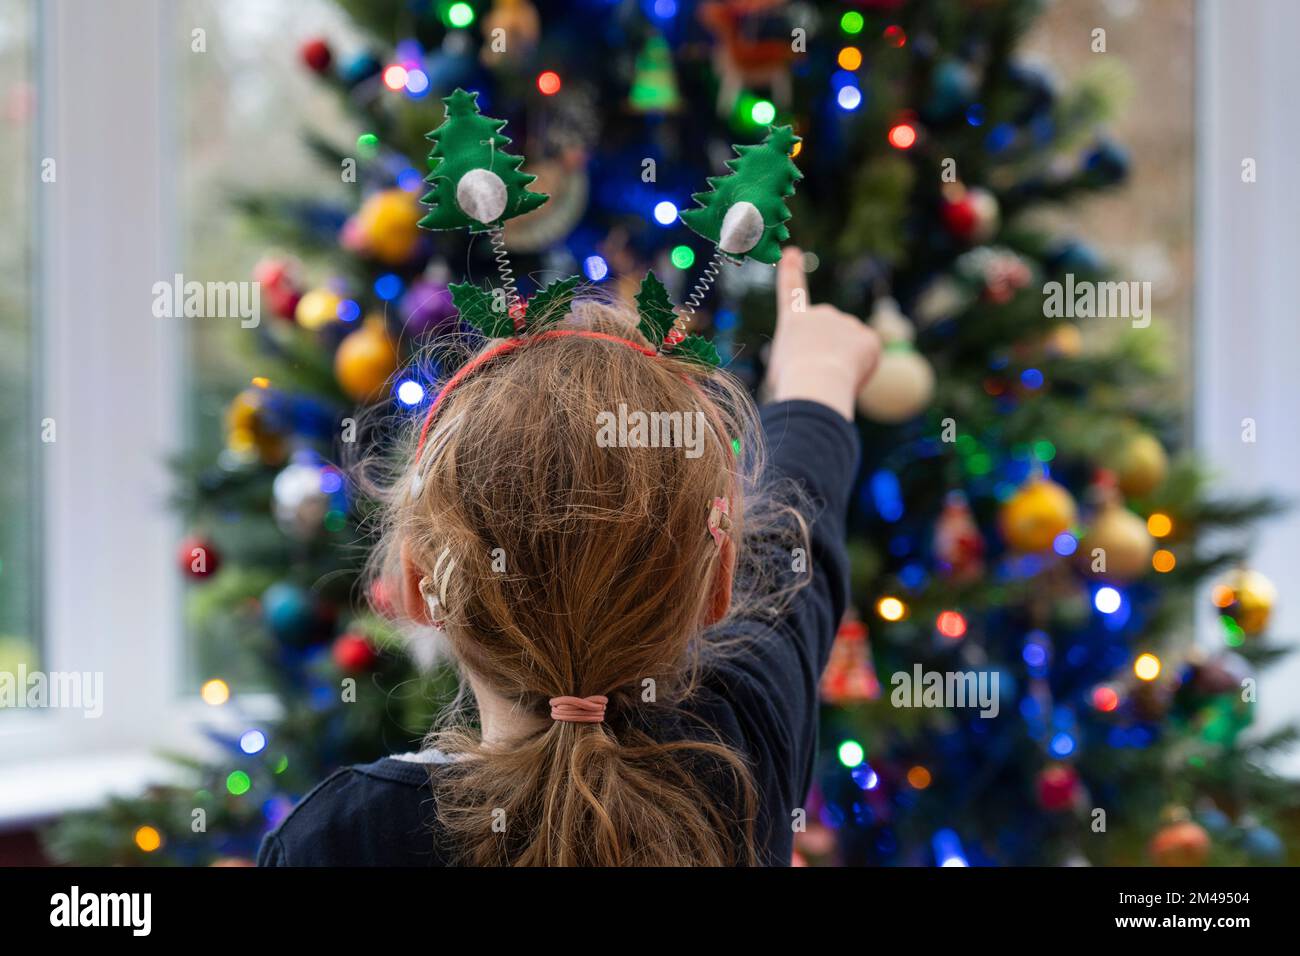 Ein kleines Mädchen (4), das auf einen Weihnachtsbaum zeigt, der mit Lichtern und Kugeln dekoriert ist. Thema: Weihnachten, Weihnachtsgrüße, Kinderwunder Stockfoto